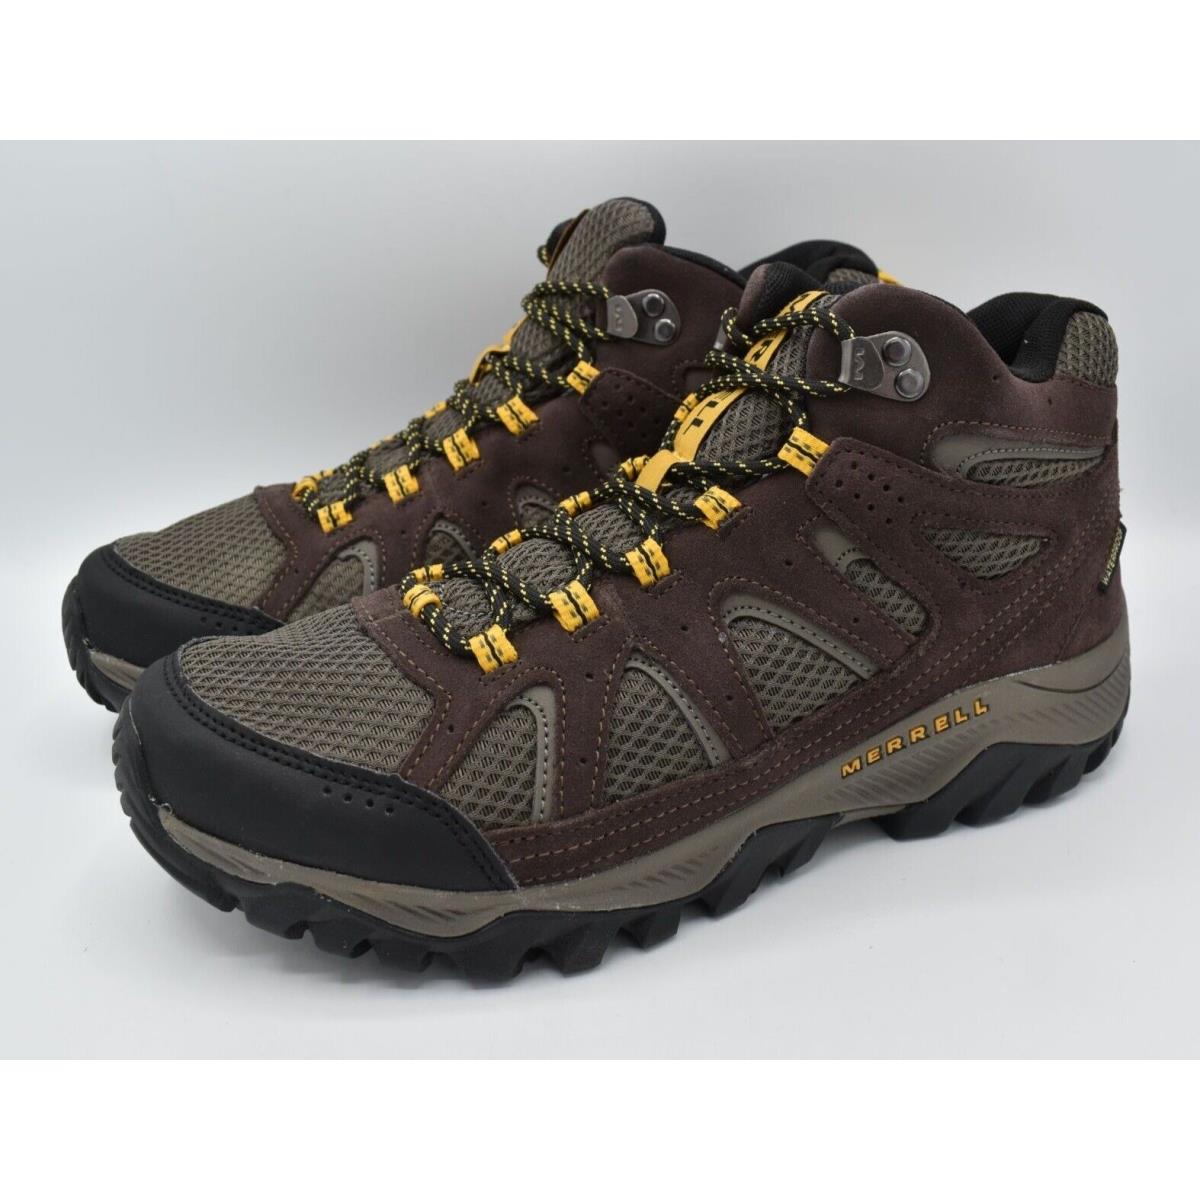 Merrell Mens Size 10 Oakcreek Mid Waterproof Expresso Hiking Boots Shoes J03640